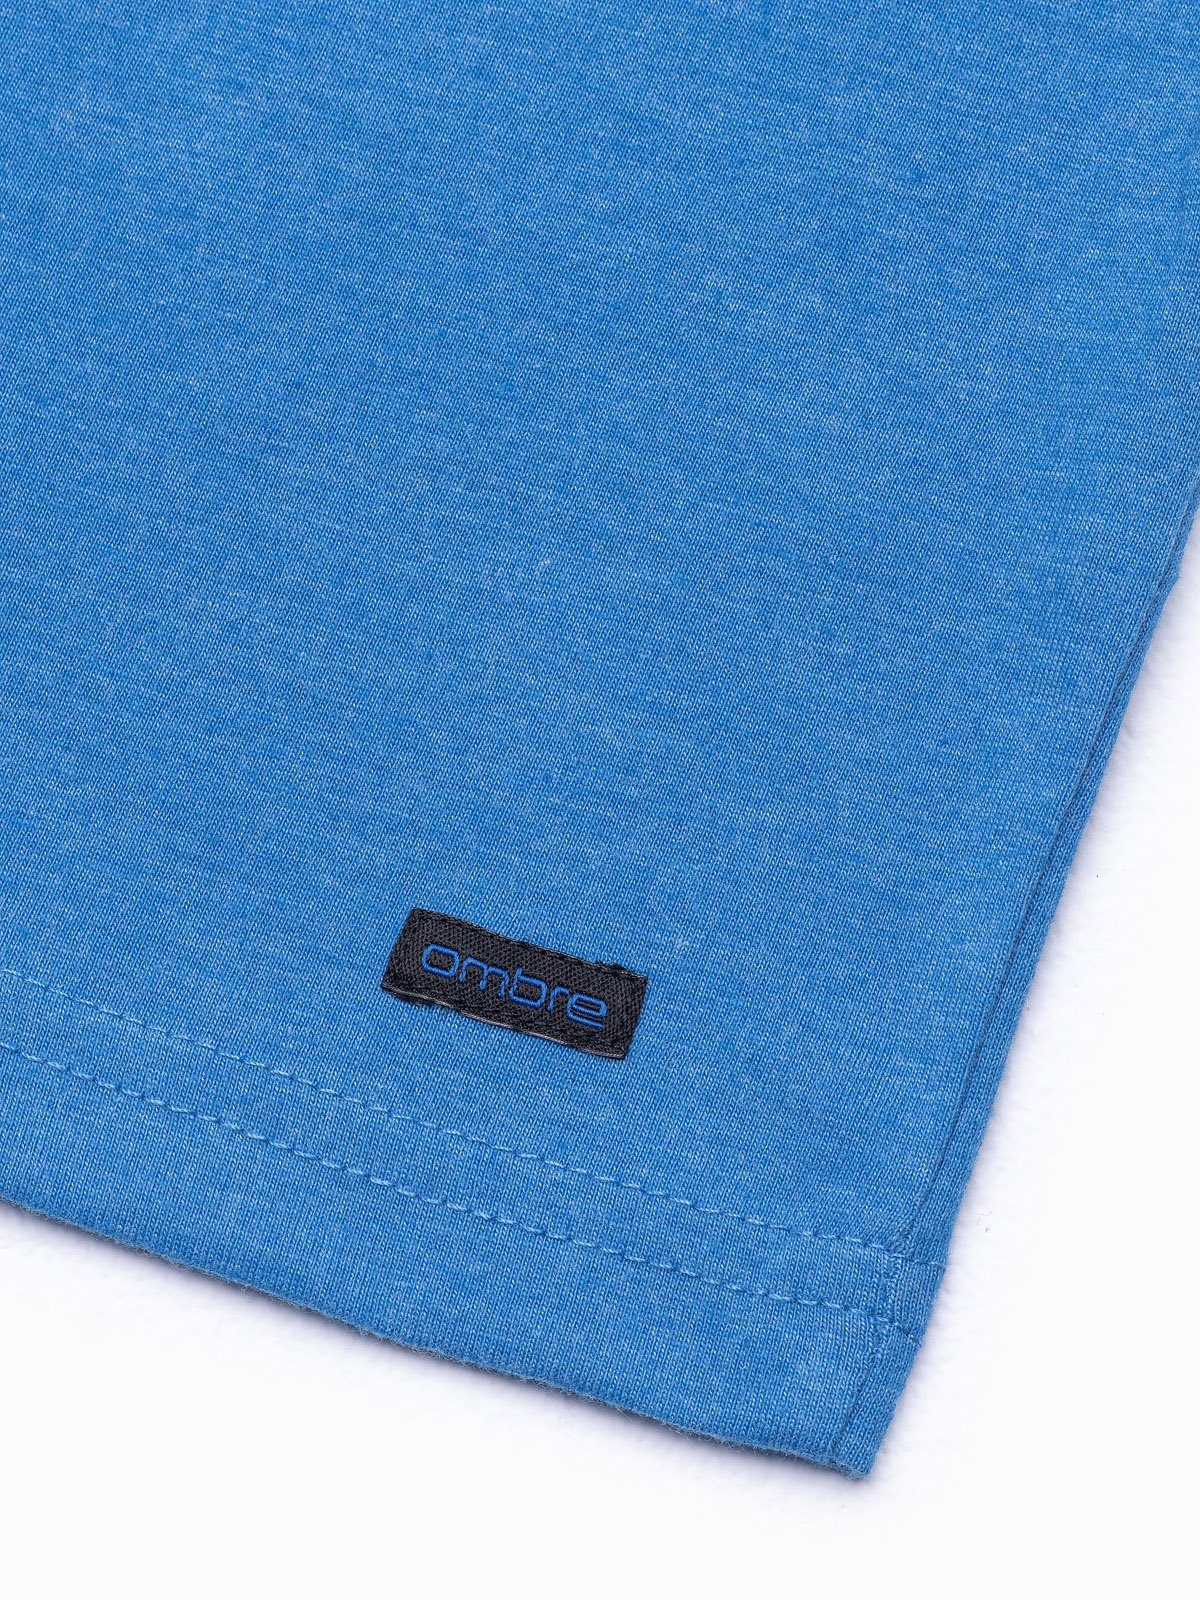 S1390 meliert blau Herren-T-Shirt S T-Shirt - OMBRE Unifarbenes